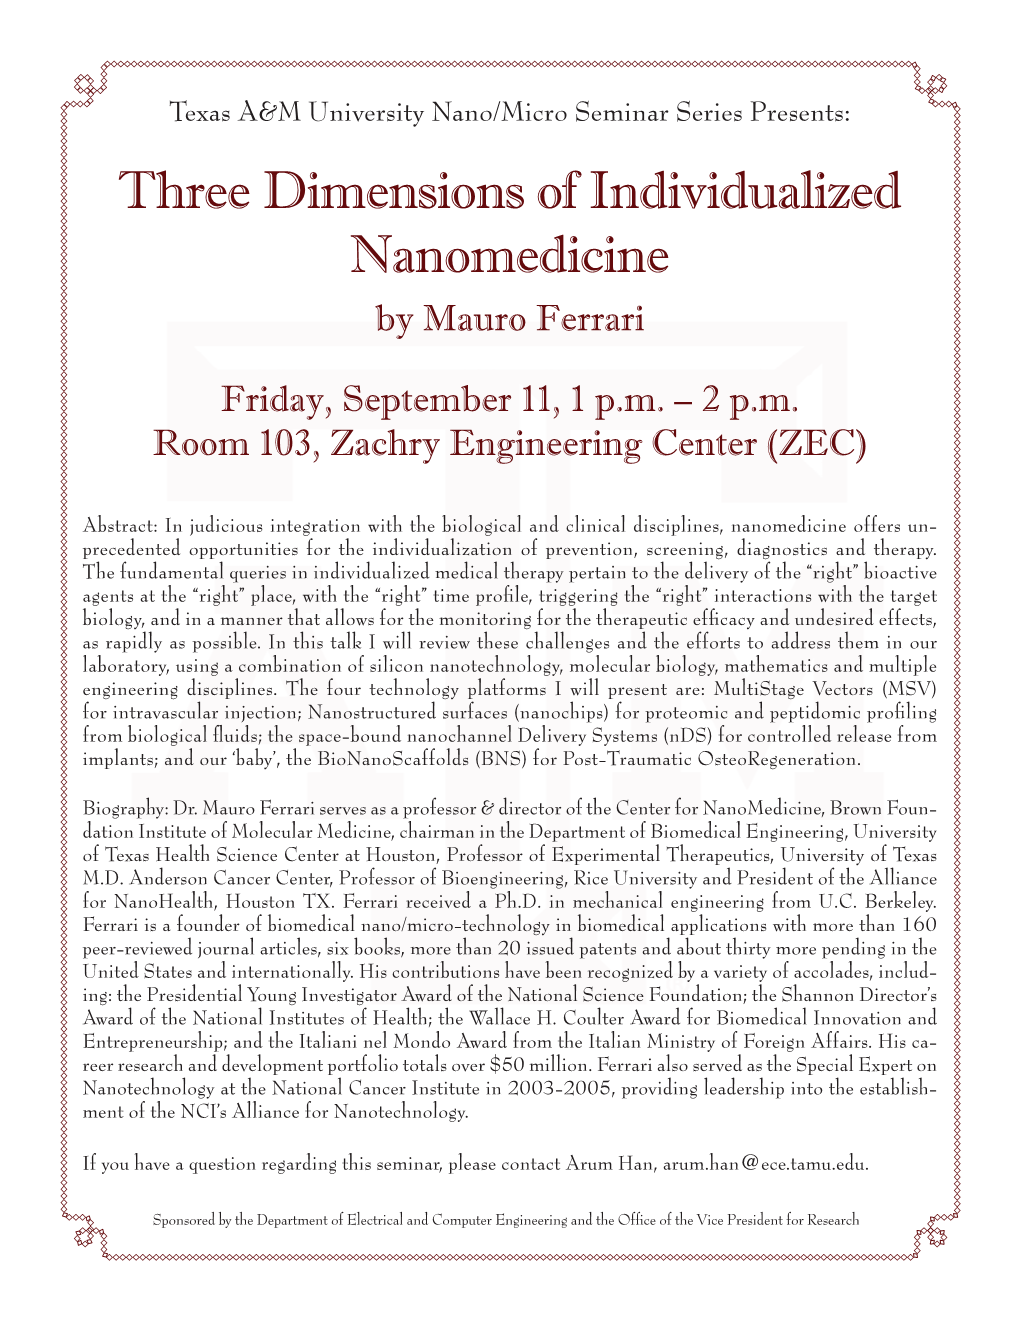 Three Dimensions of Individualized Nanomedicine by Mauro Ferrari